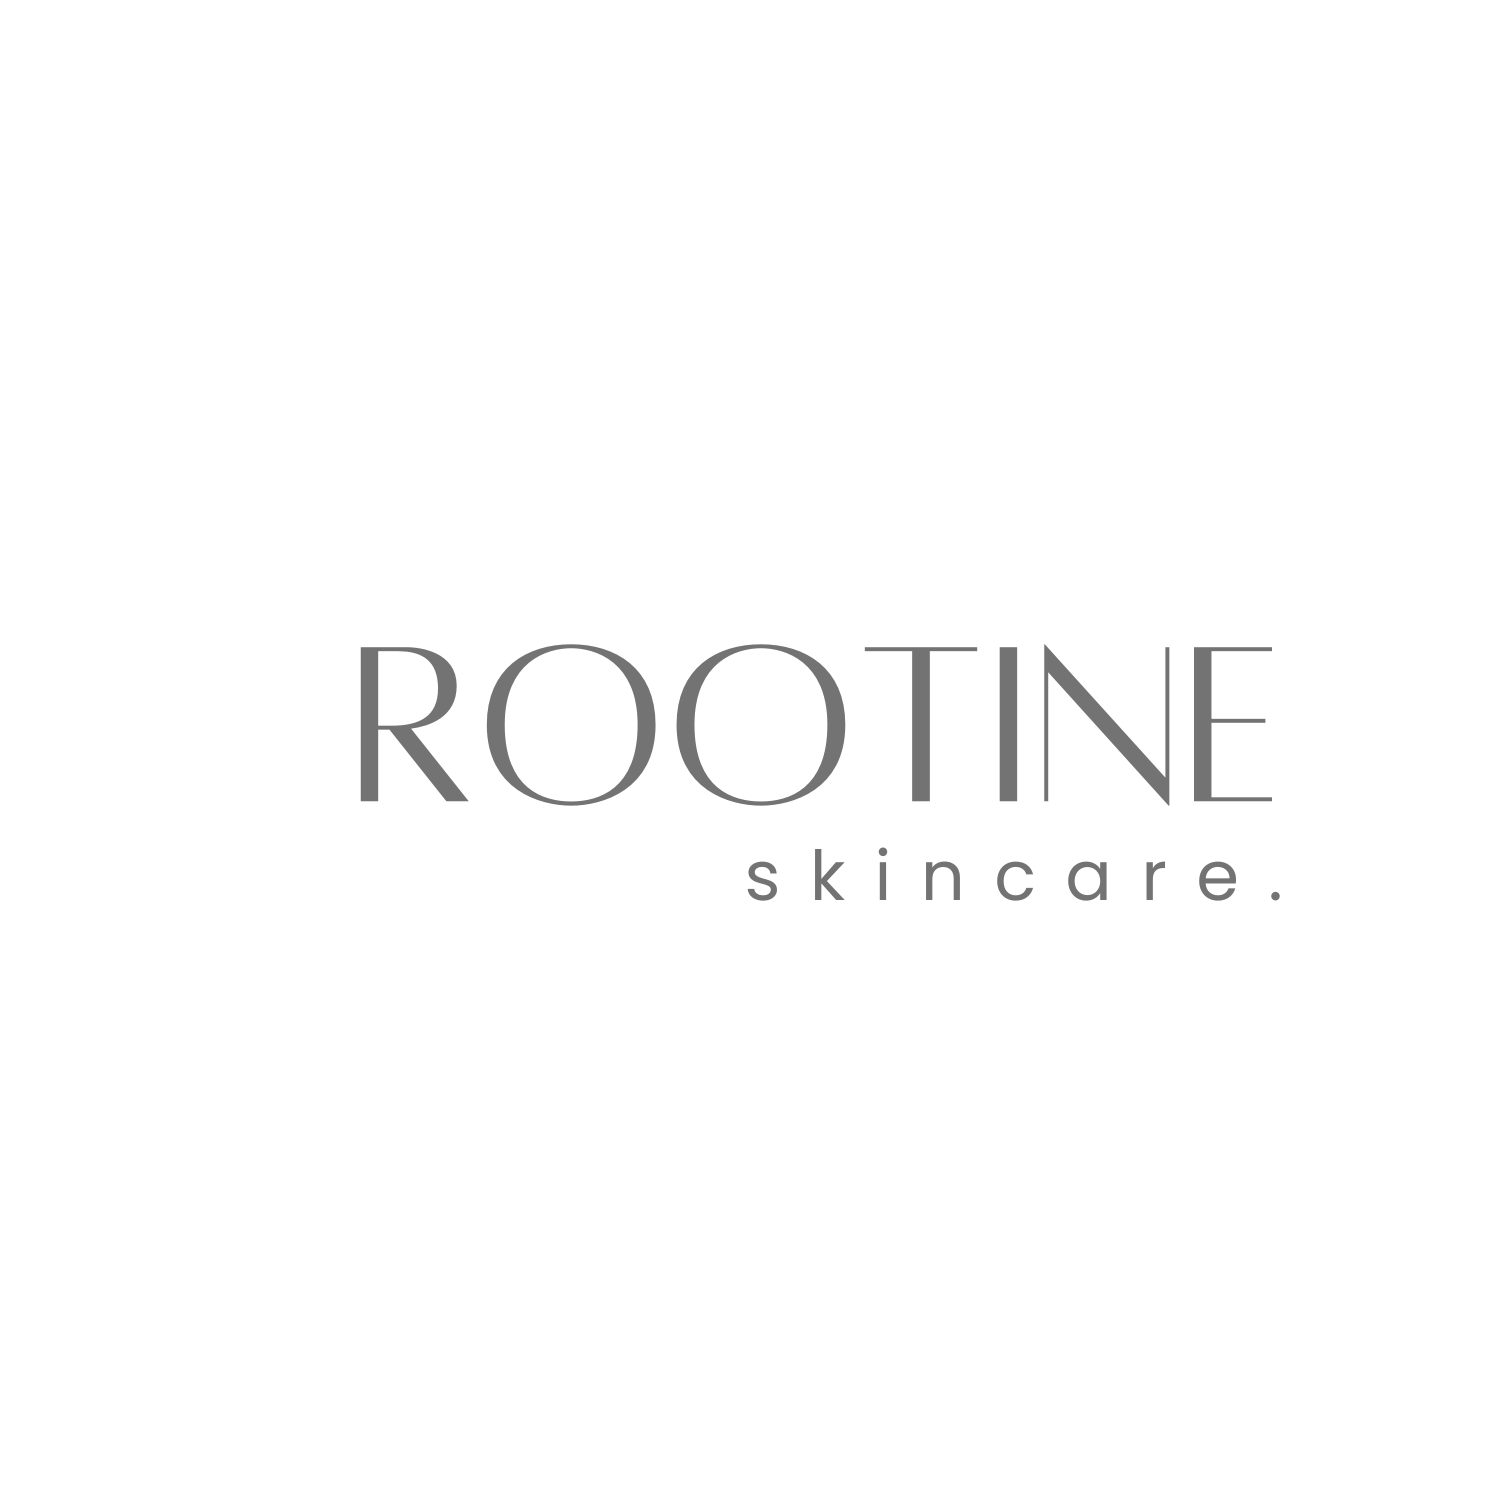 Rootine skincare – rootineskincare